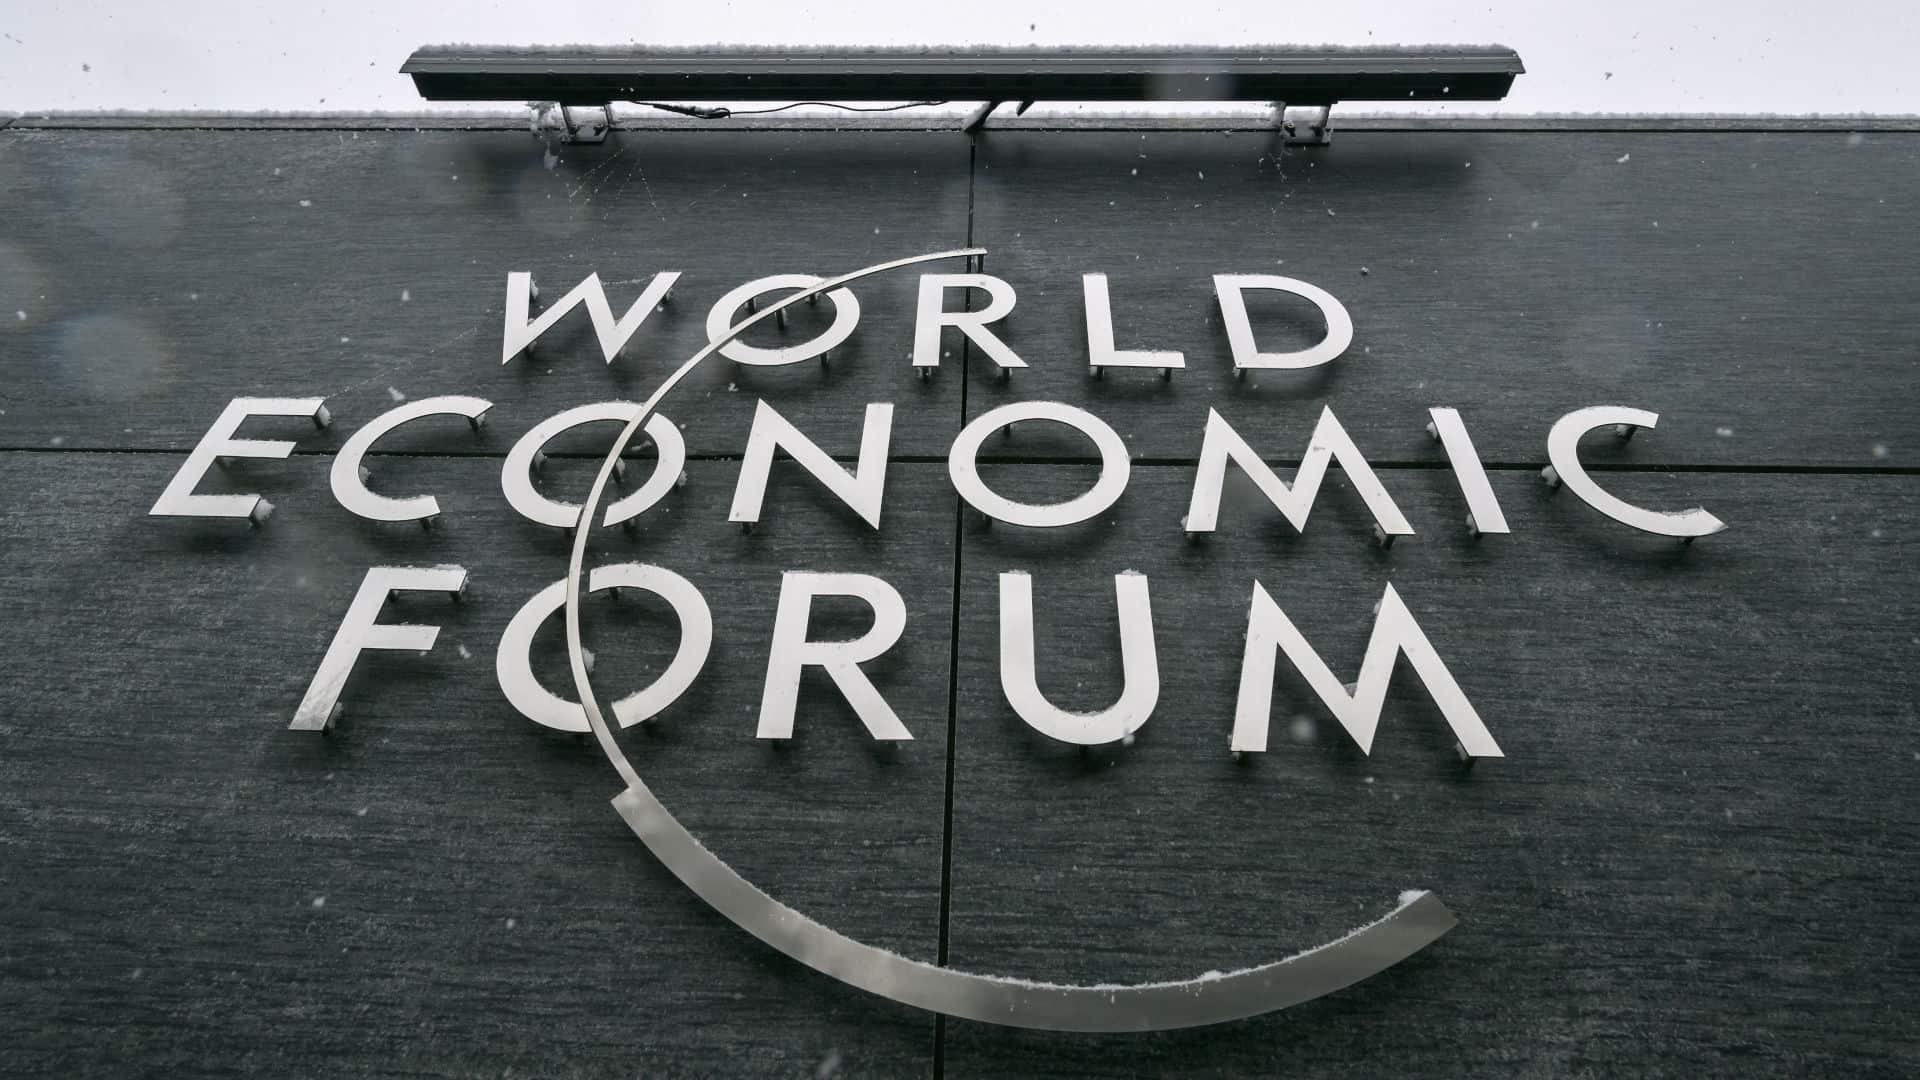 Forum économique mondial